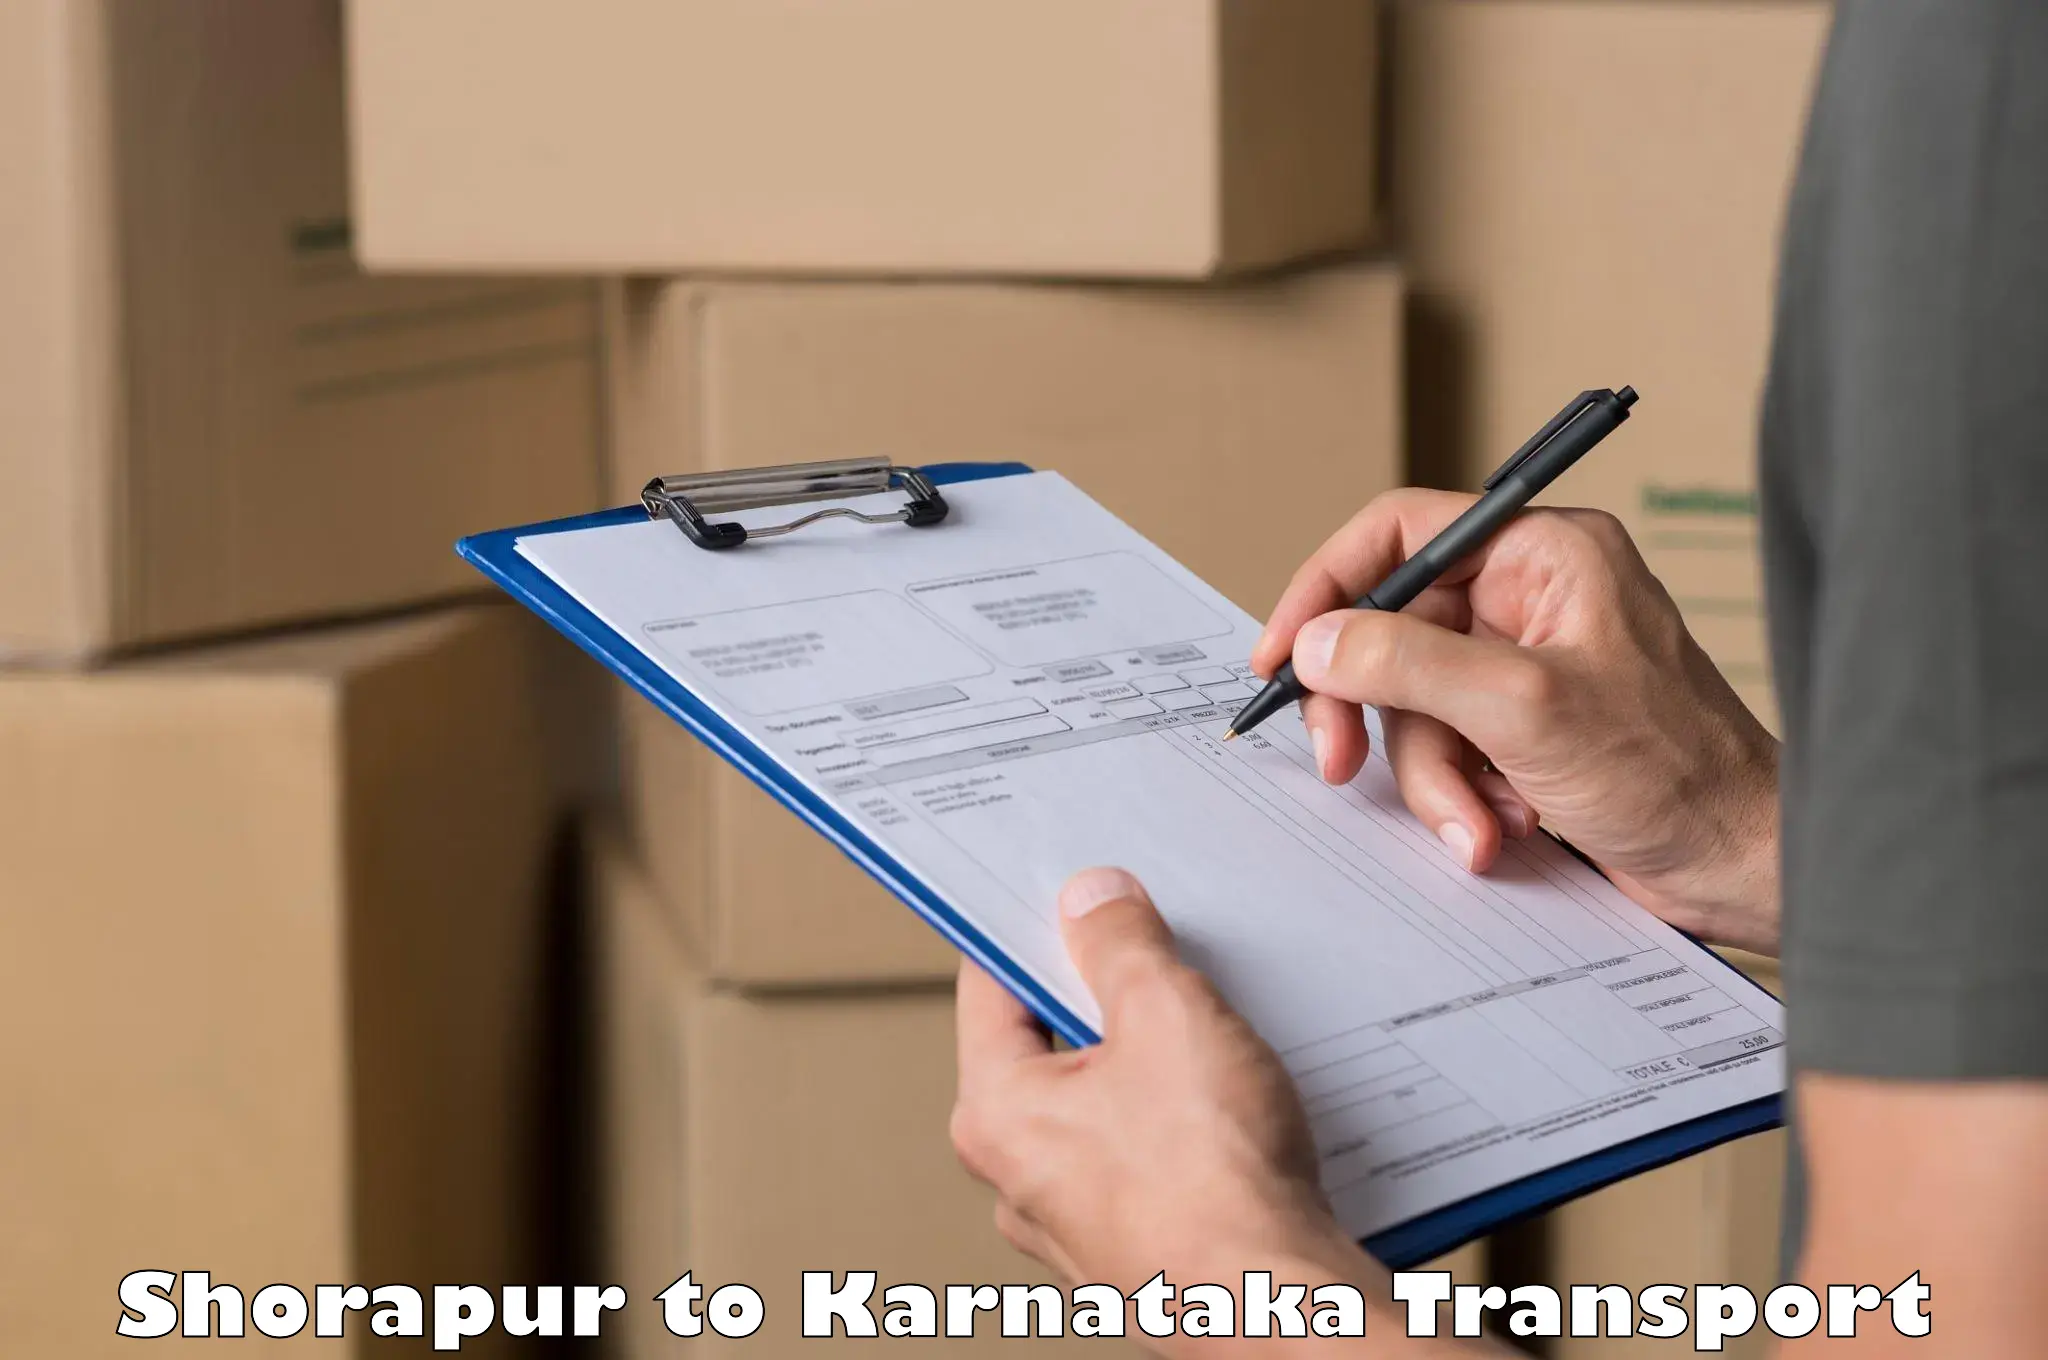 Furniture transport service Shorapur to Karnataka